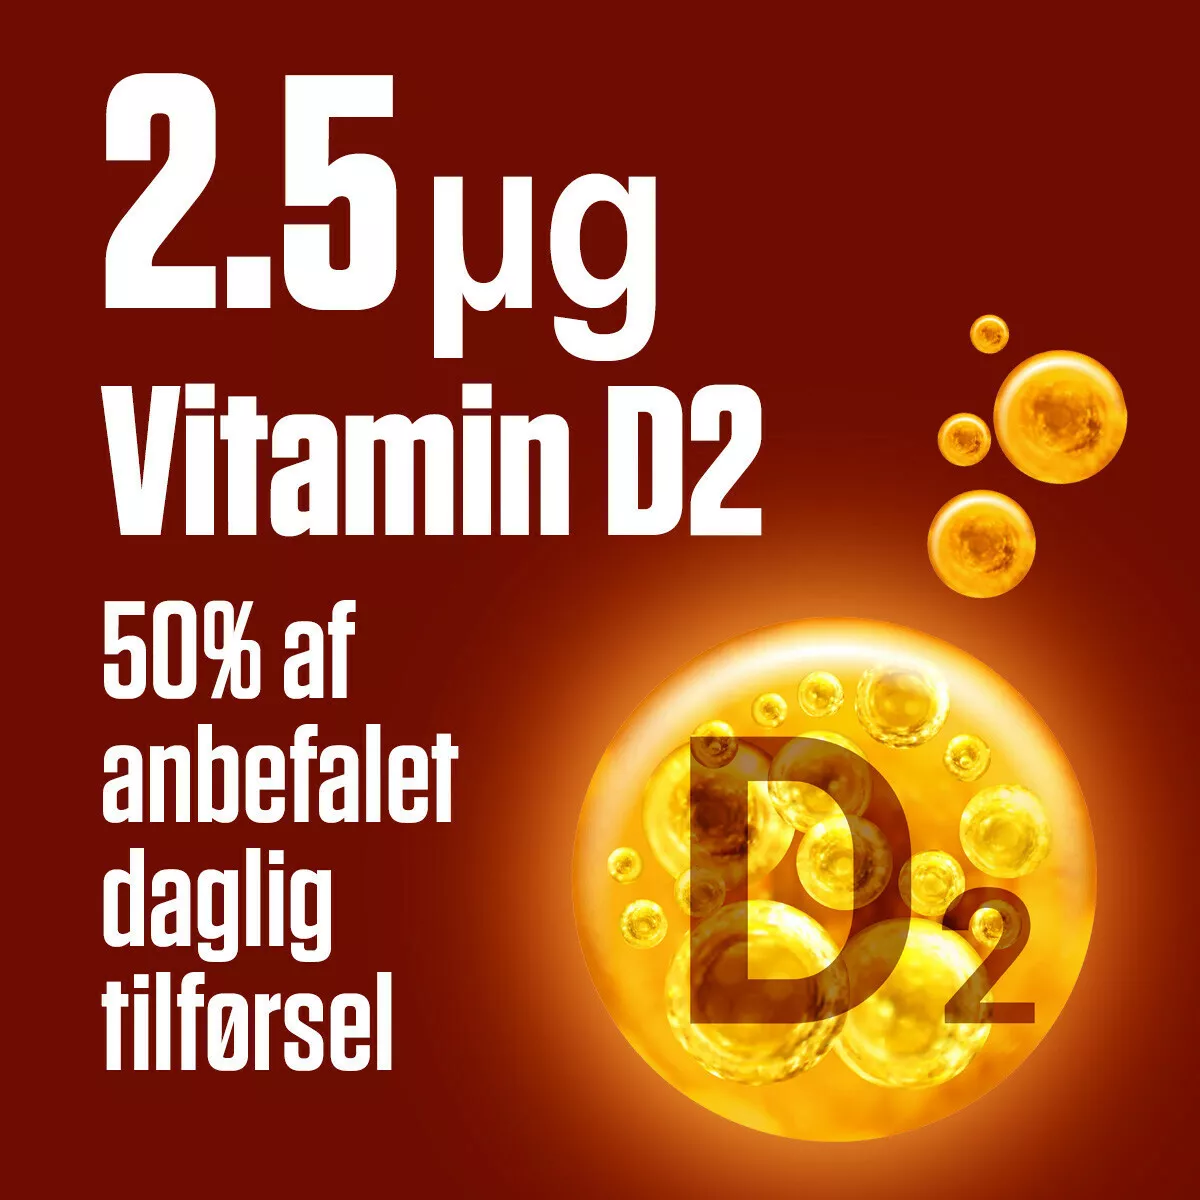 Æblecidereddike med D2-vitamin (50 vingummier)